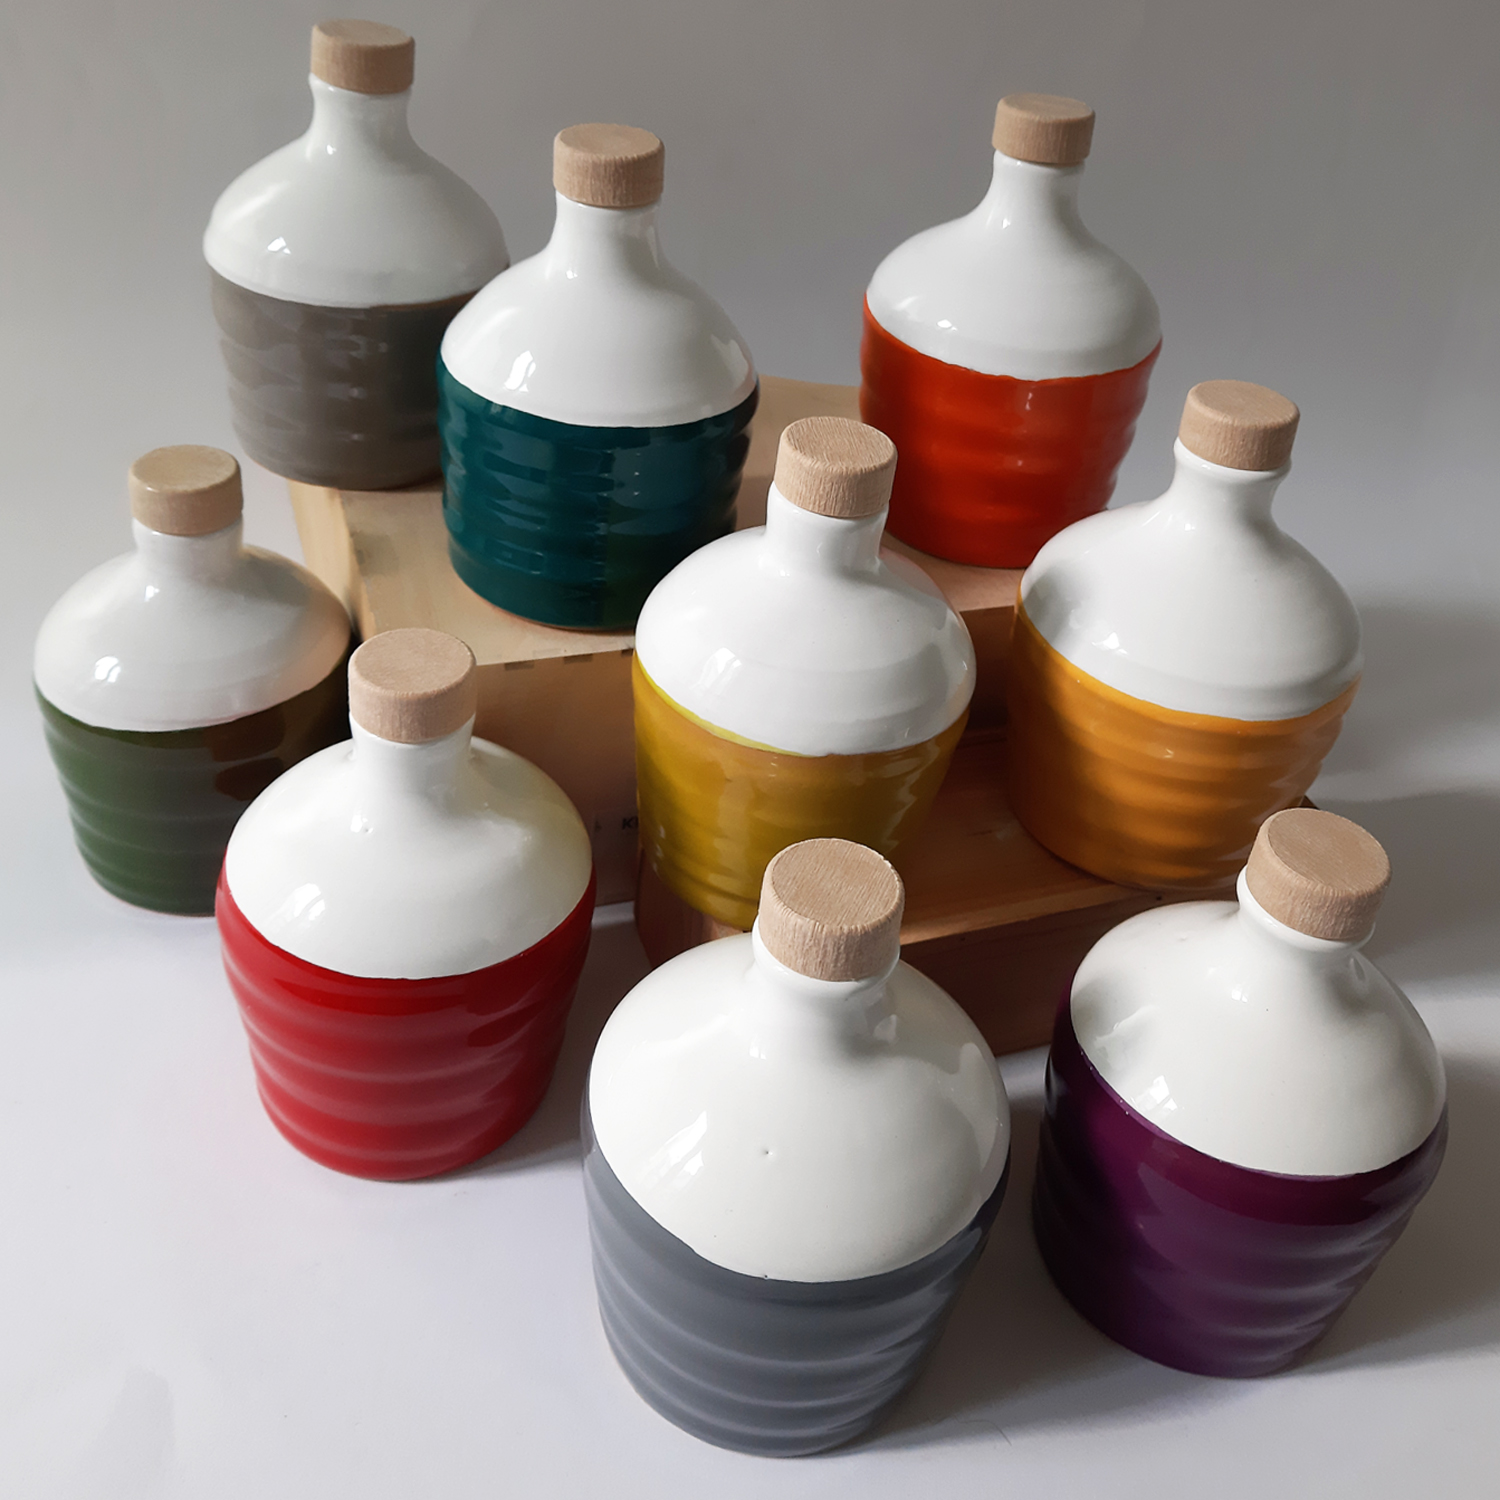 Molto Mini B-Color - orcio in ceramica artigianale pugliese con 100 ml di olio extra vergine d'oliva